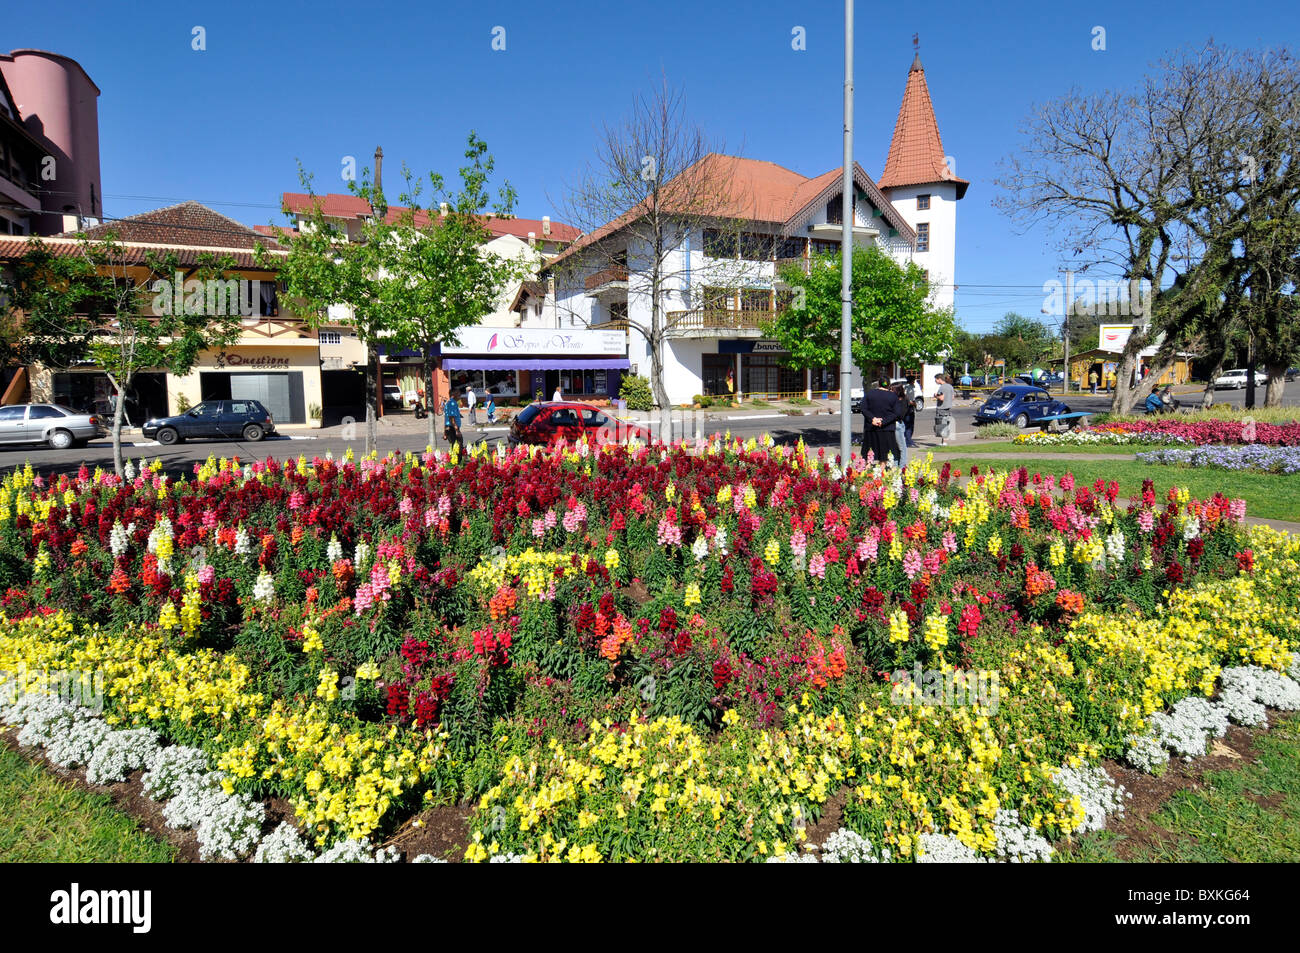 Piazza Principale con giardini di fiori, Nova Petropolis, Rio Grande do Sul - Brasile Foto Stock